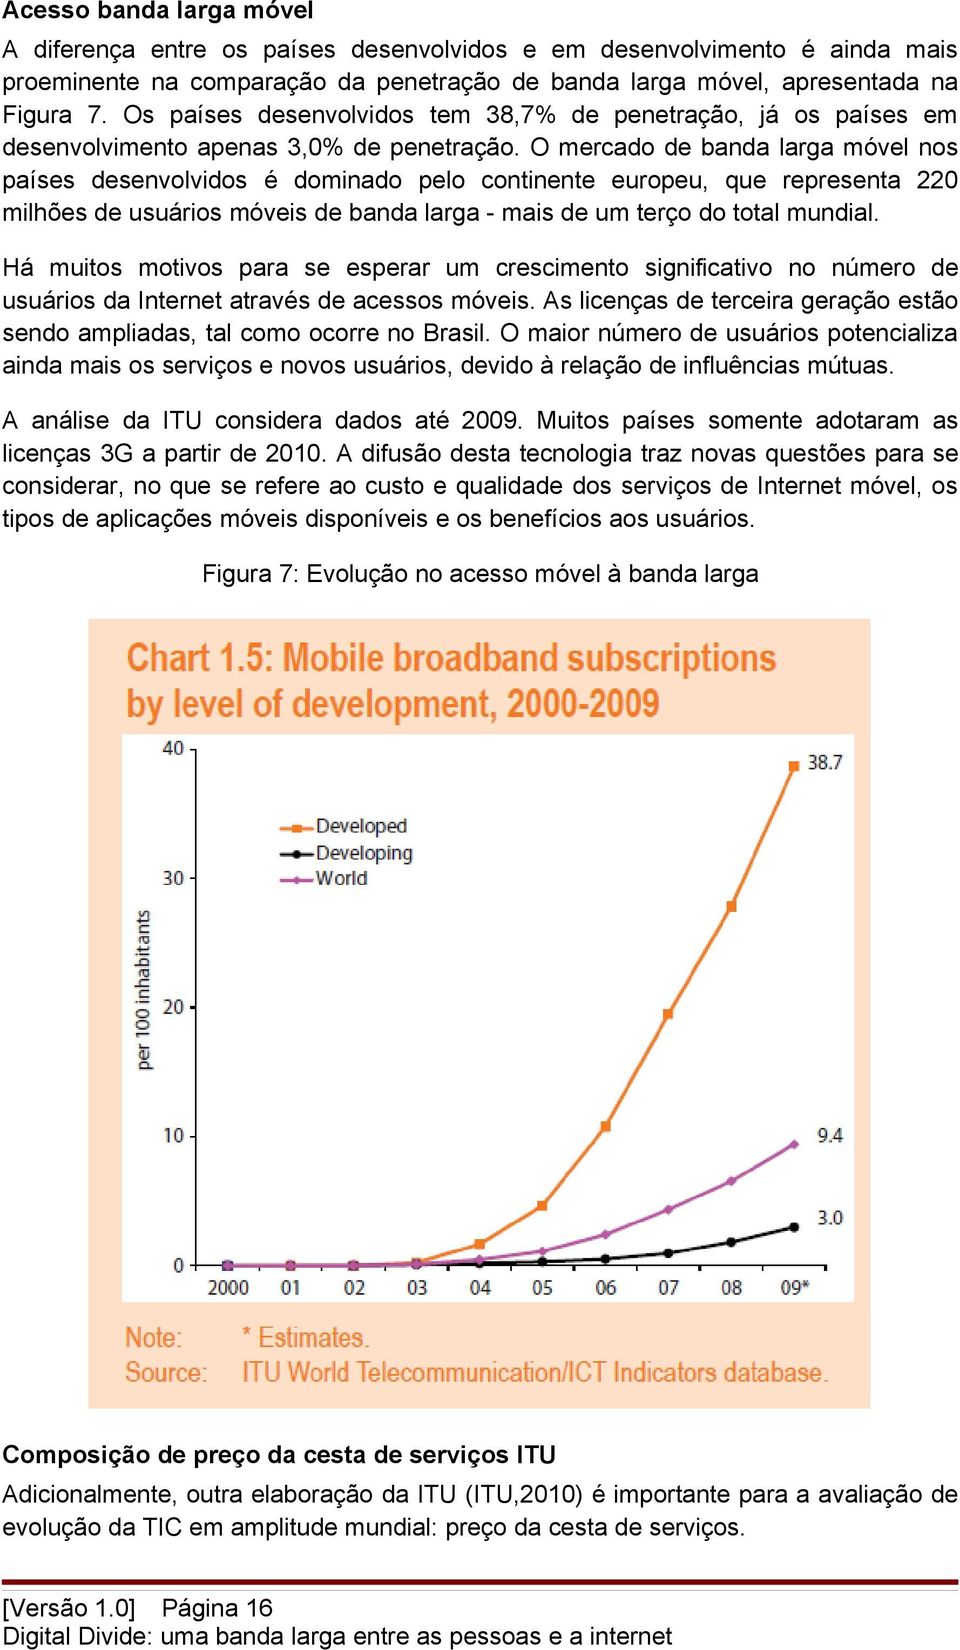 O mercado de banda larga móvel nos países desenvolvidos é dominado pelo continente europeu, que representa 220 milhões de usuários móveis de banda larga - mais de um terço do total mundial.